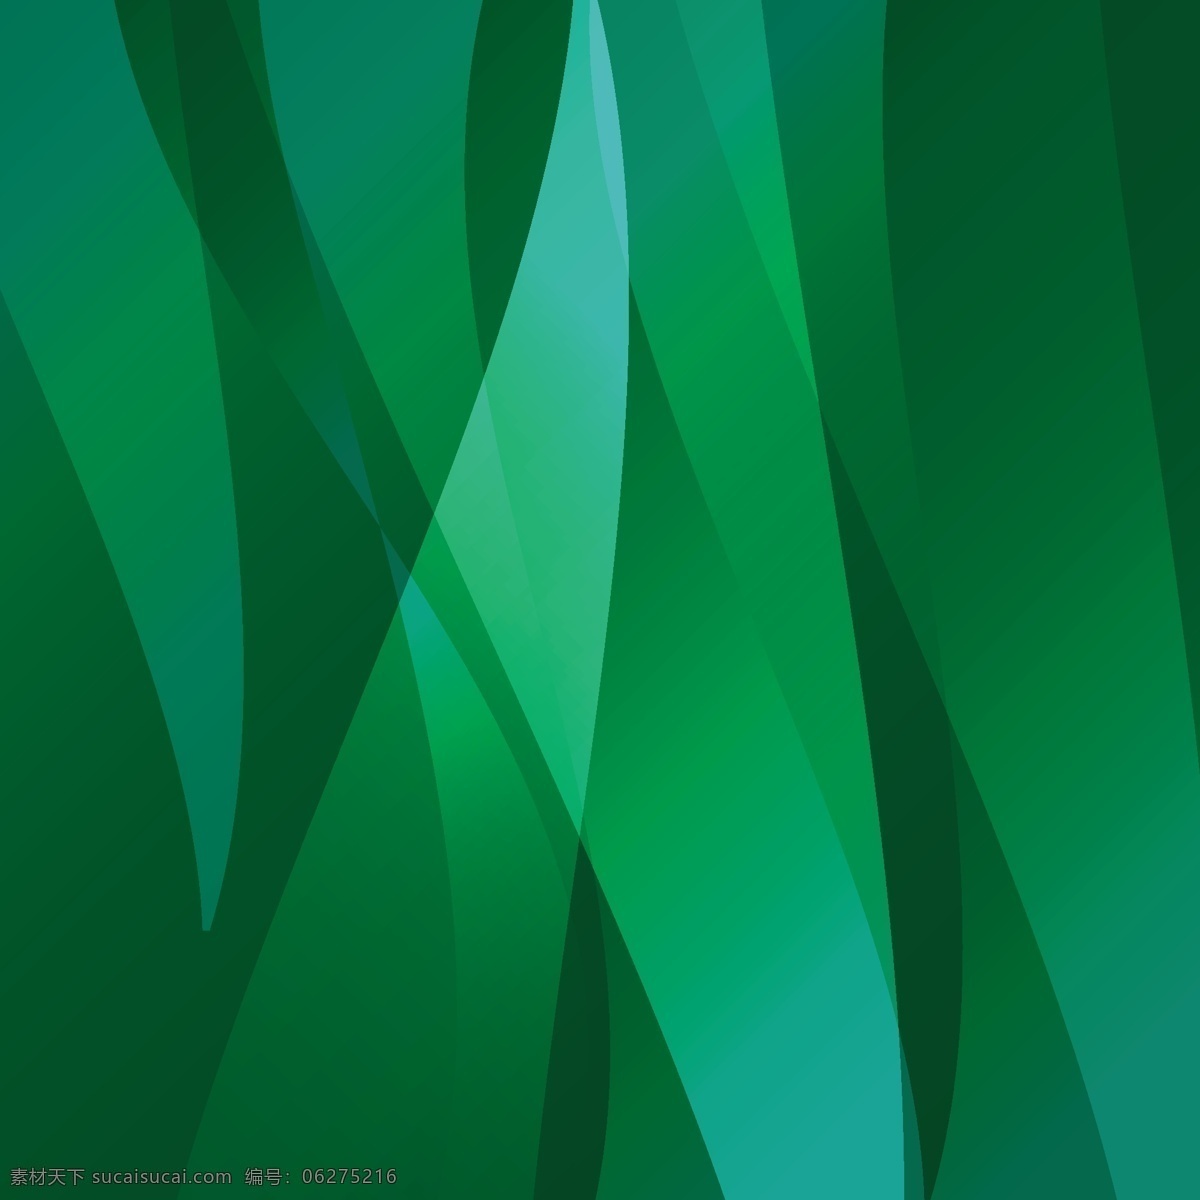 摘要背景设计 背景 抽象背景 抽象 绿色 绿色背景 形状 墙纸 颜色 丰富多彩 背景绿色 色彩 抽象的形状 背景色 彩色